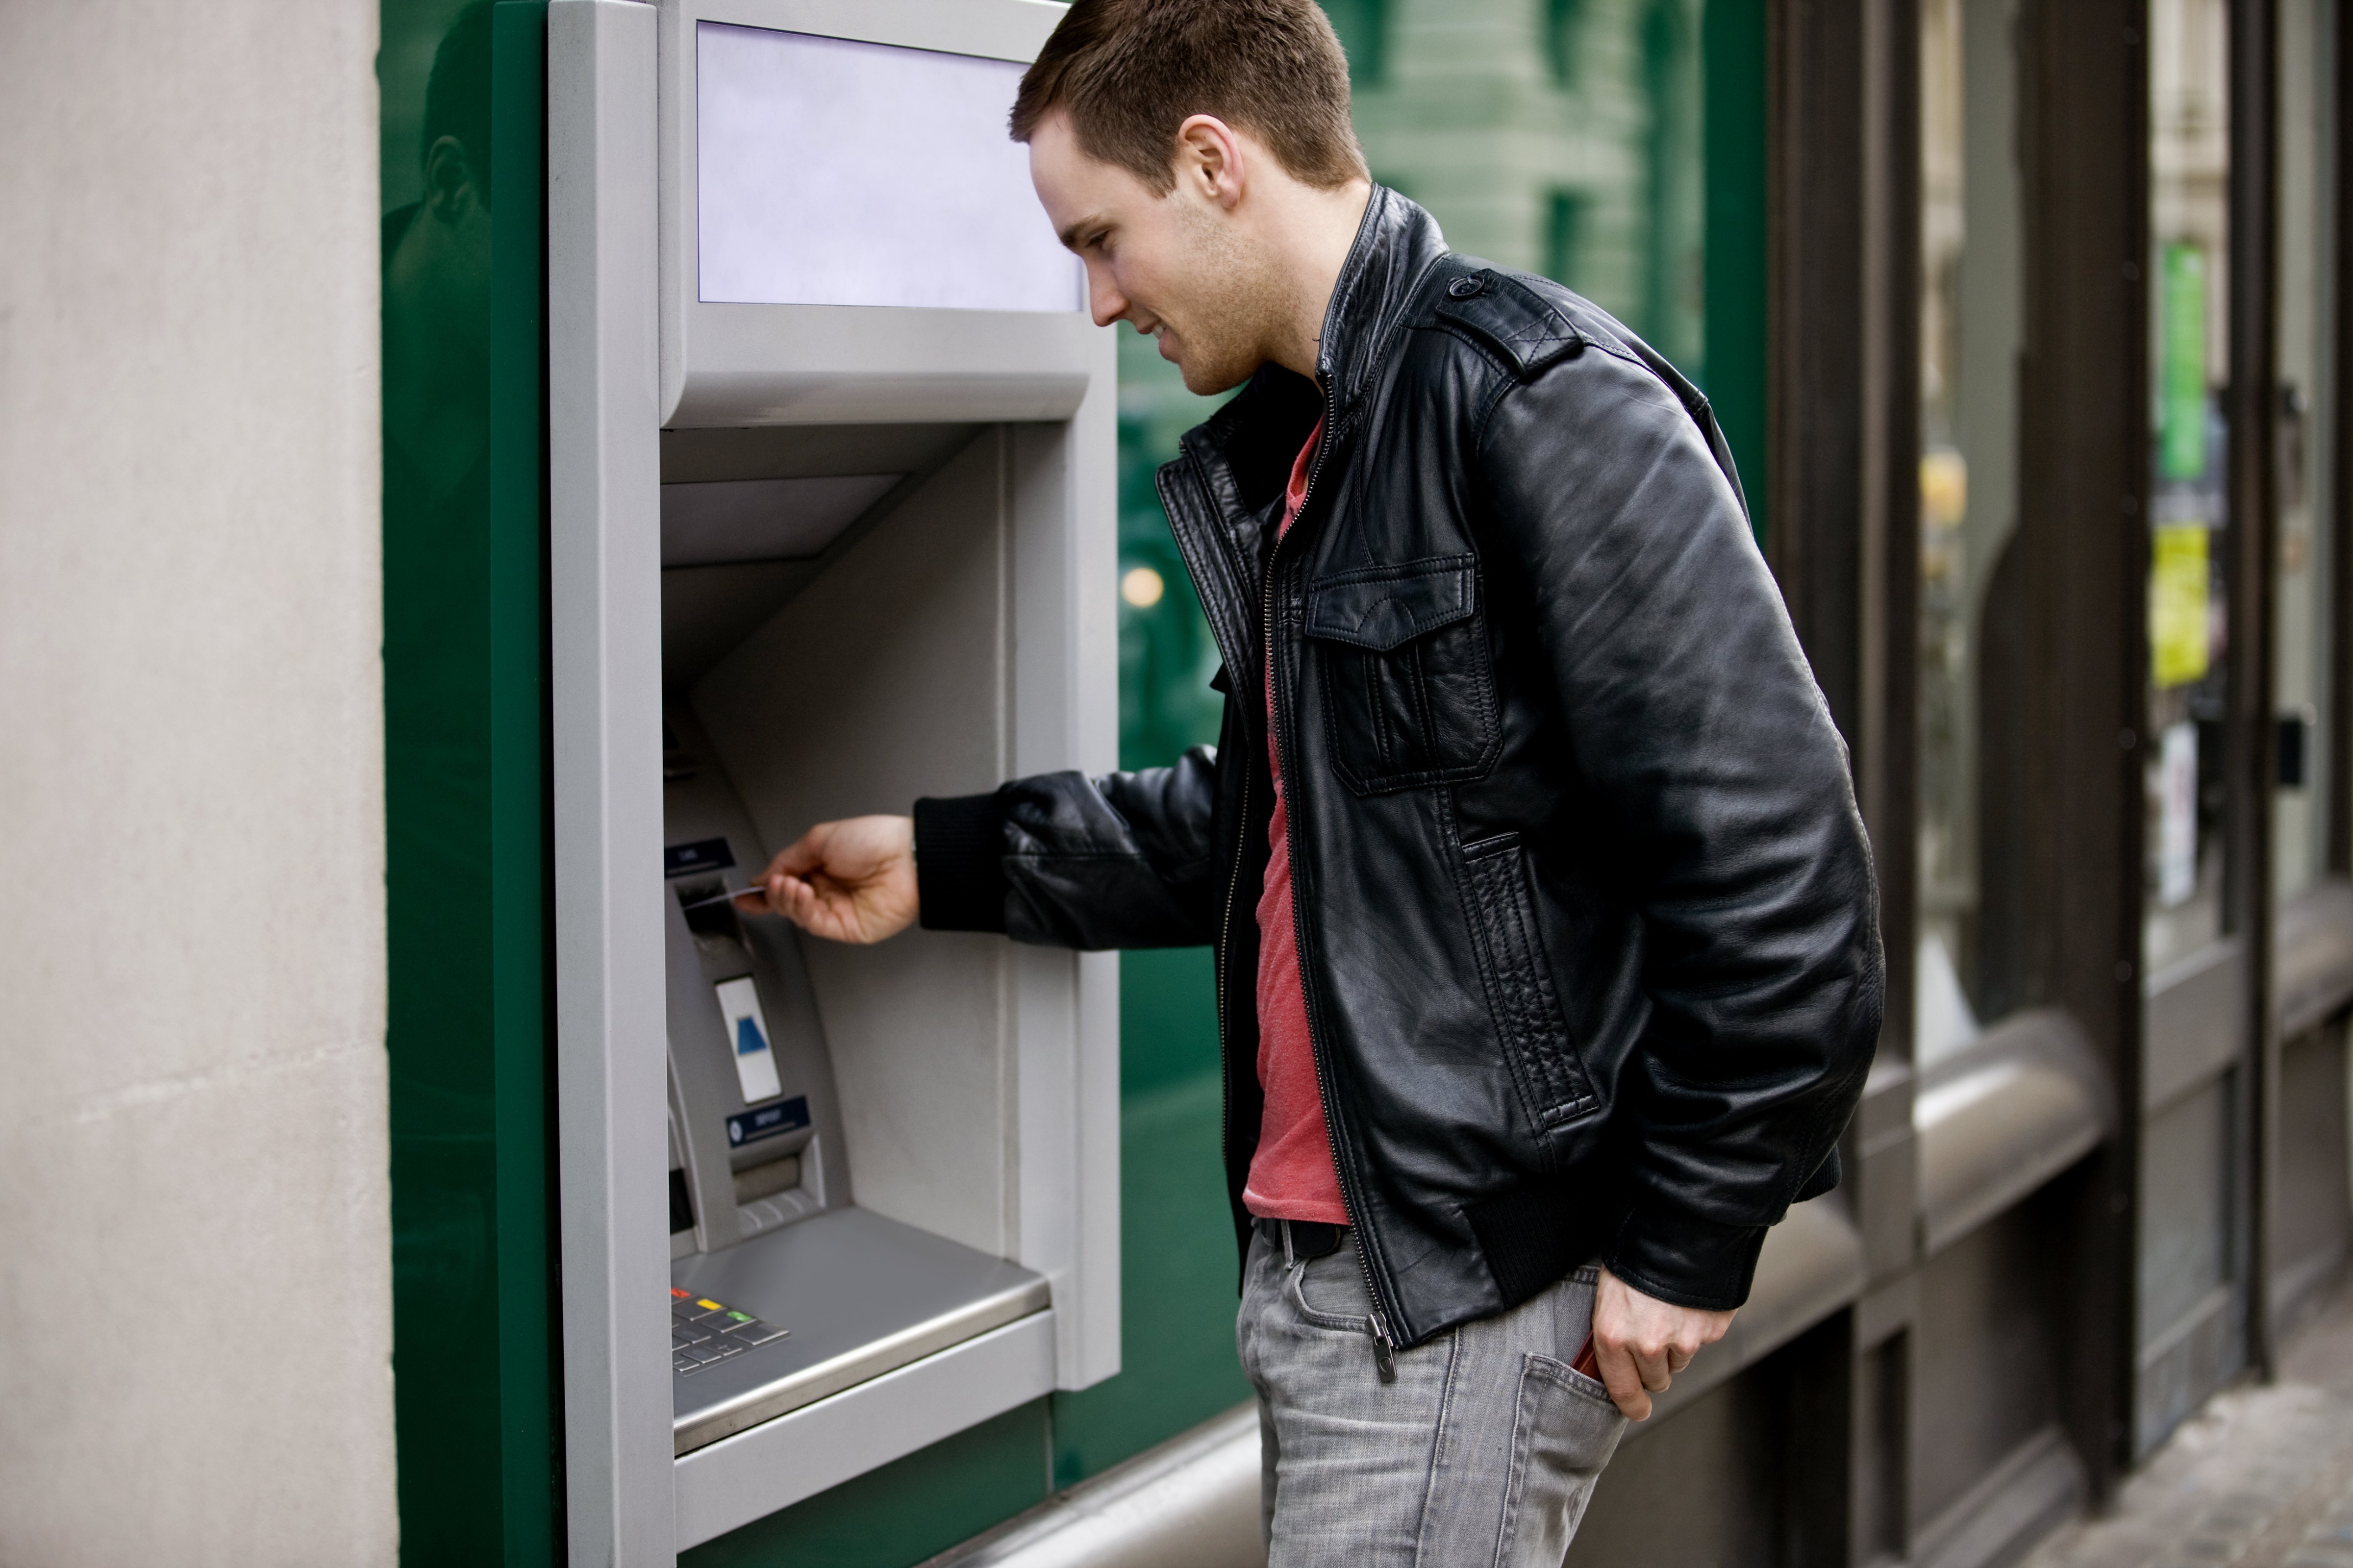 ATM Overdraft Fees